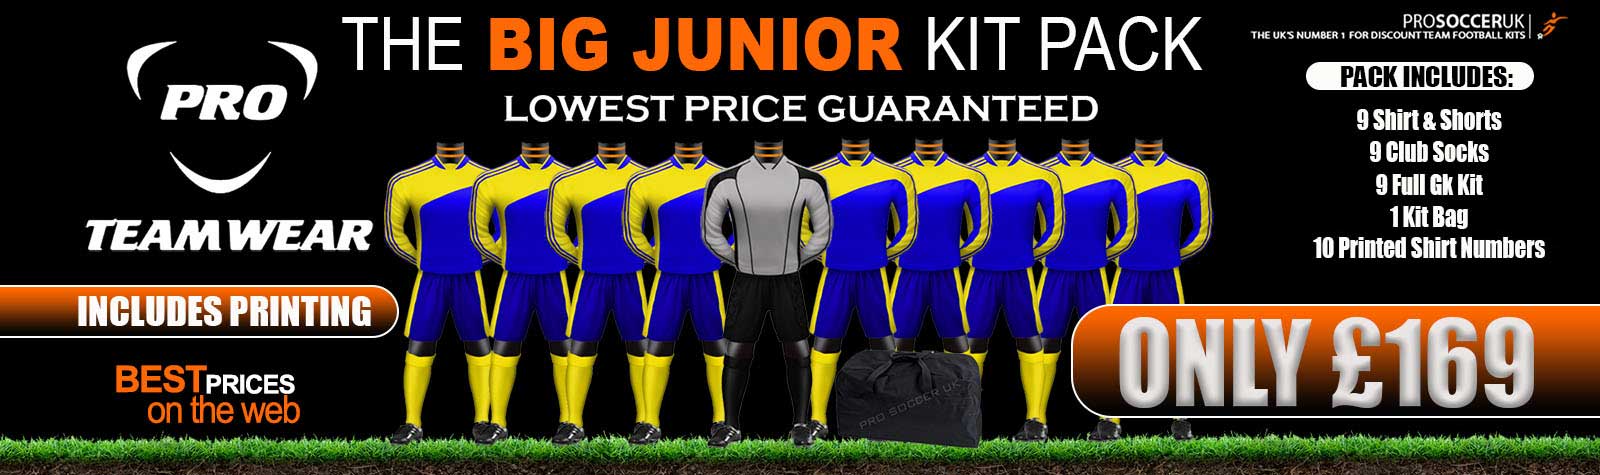 School kit deals - School football team kits